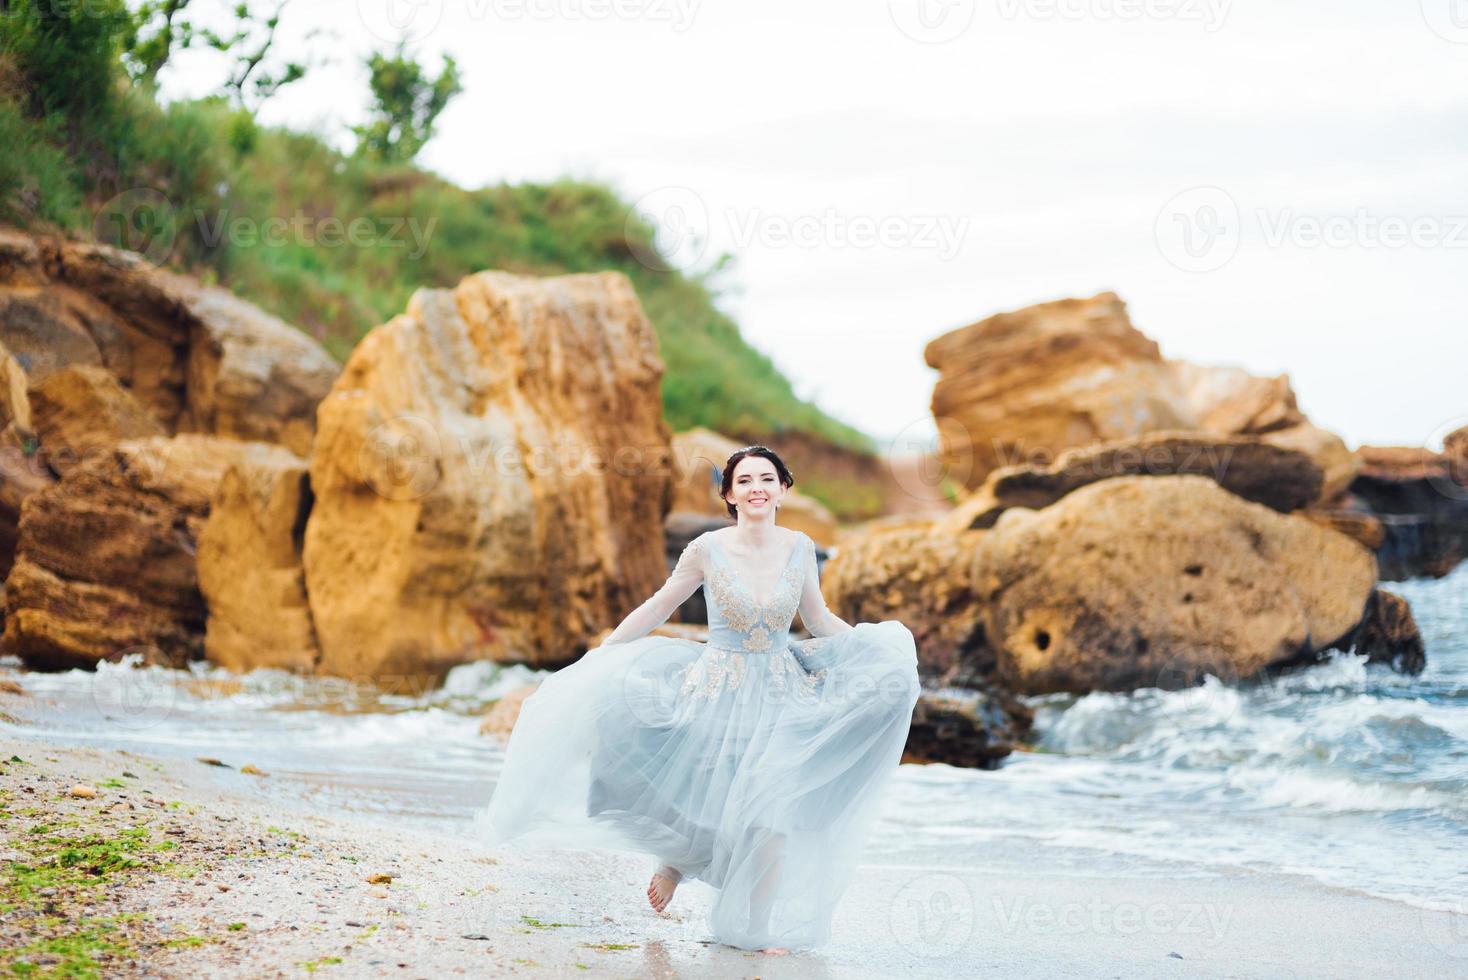 noiva em um vestido azul claro caminhando à beira-mar foto